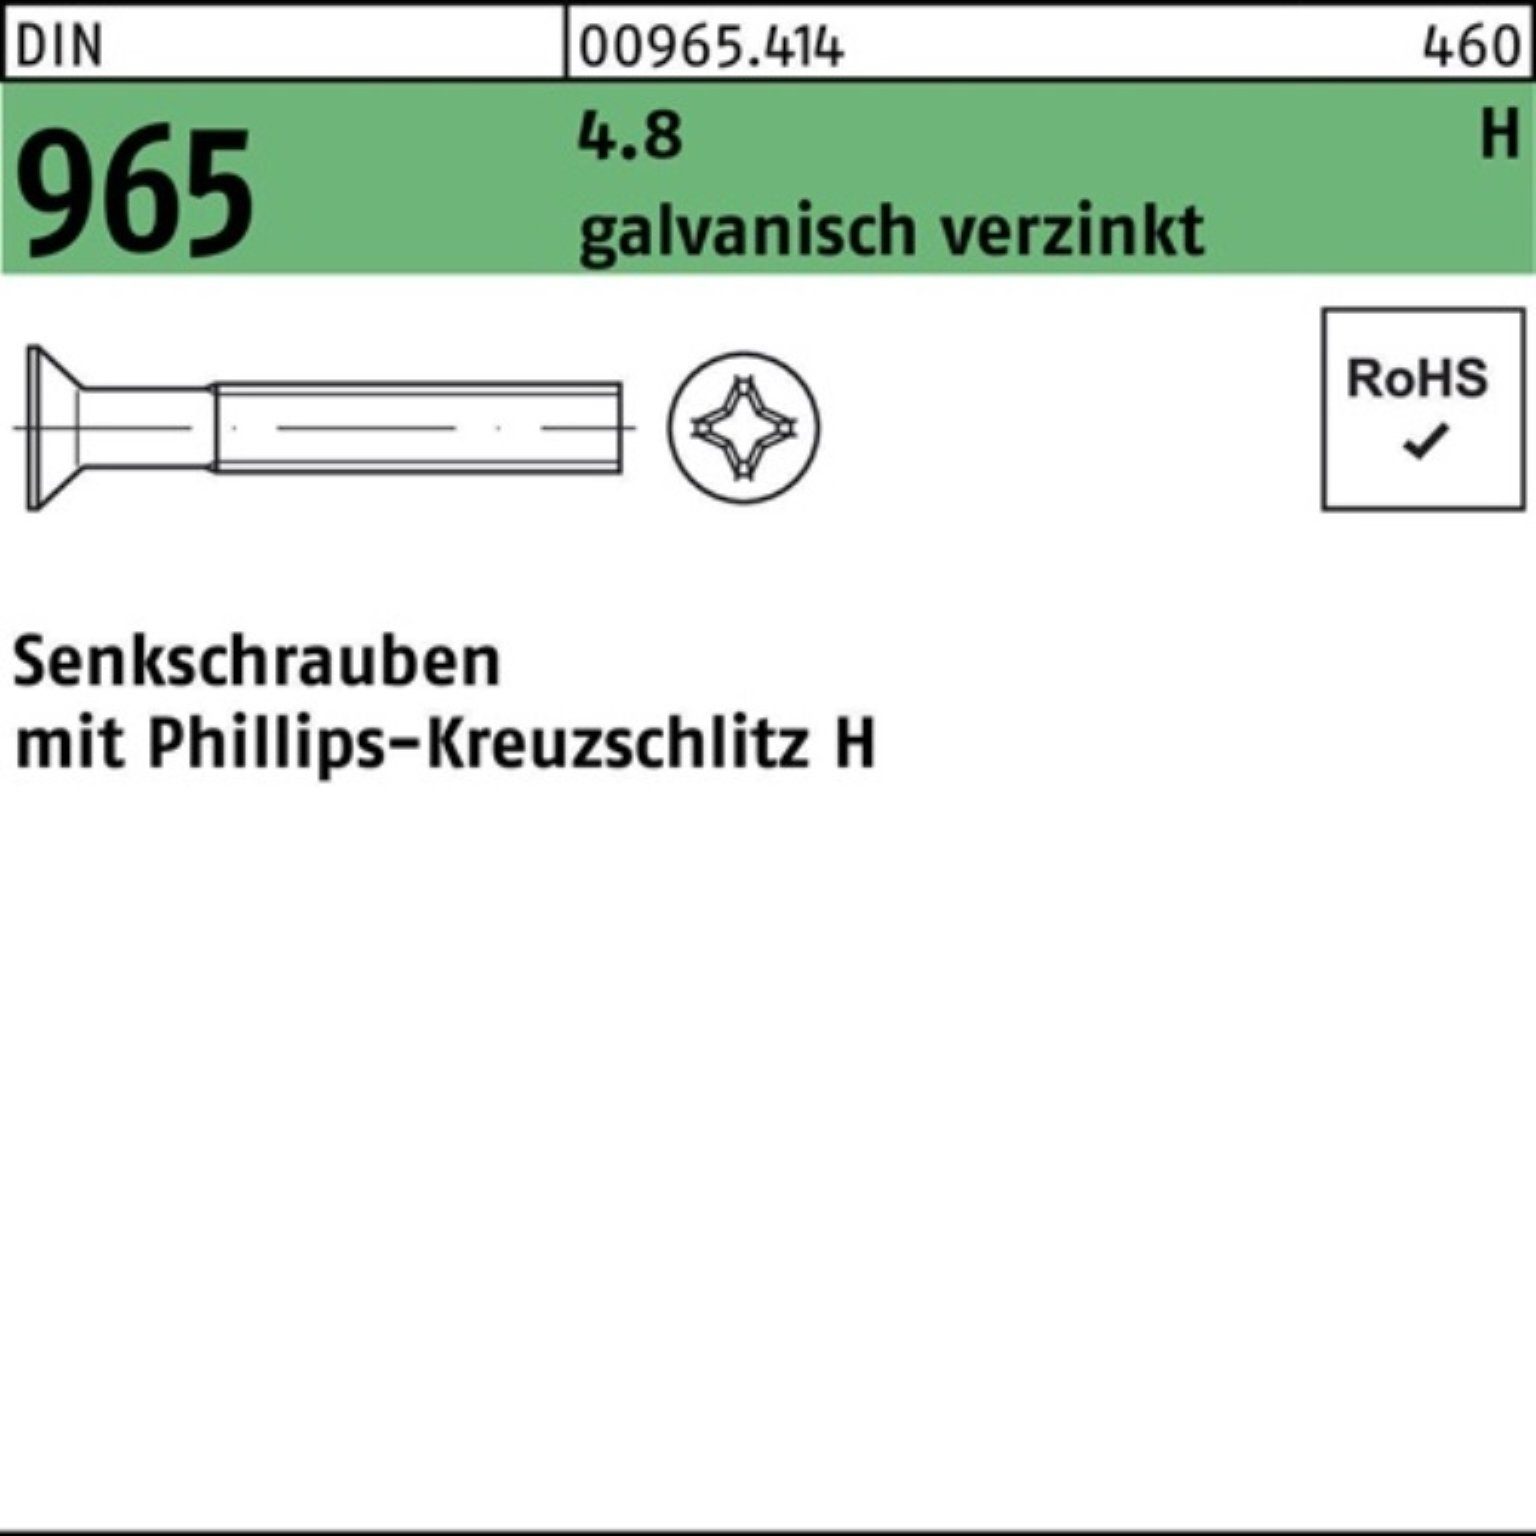 25-H Senkschraube DIN Pack Reyher galv.verz. DI 1000er M4x 965 Senkschraube PH 4.8 1000St.